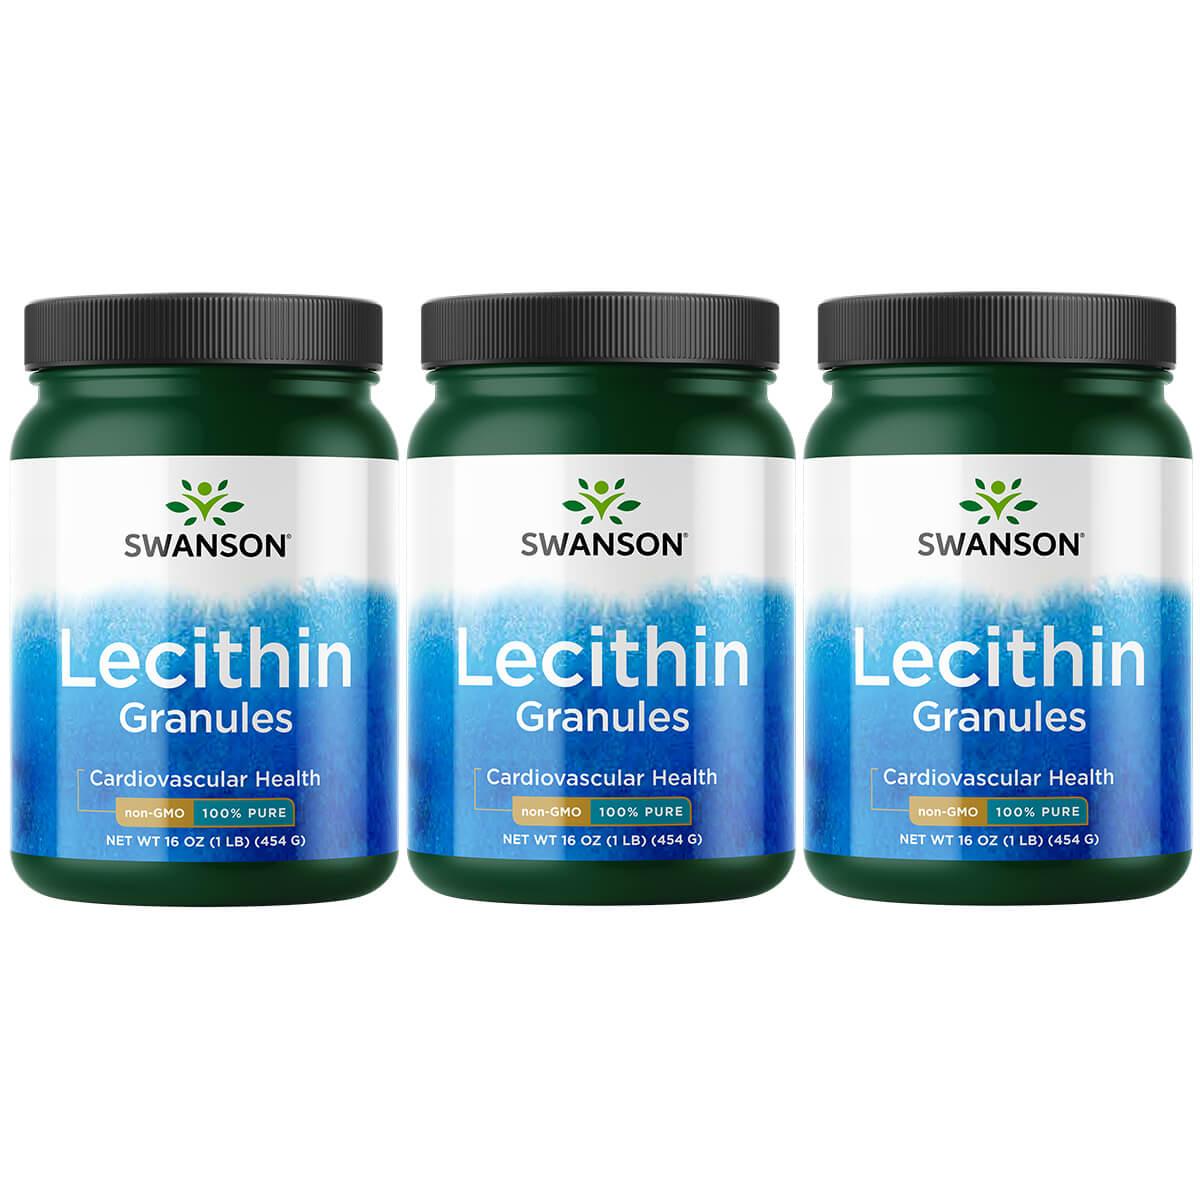 Swanson Premium Lecithin Granules - Non-Gmo 100% Pure 3 Pack Supplement Vitamin 16 oz Granules